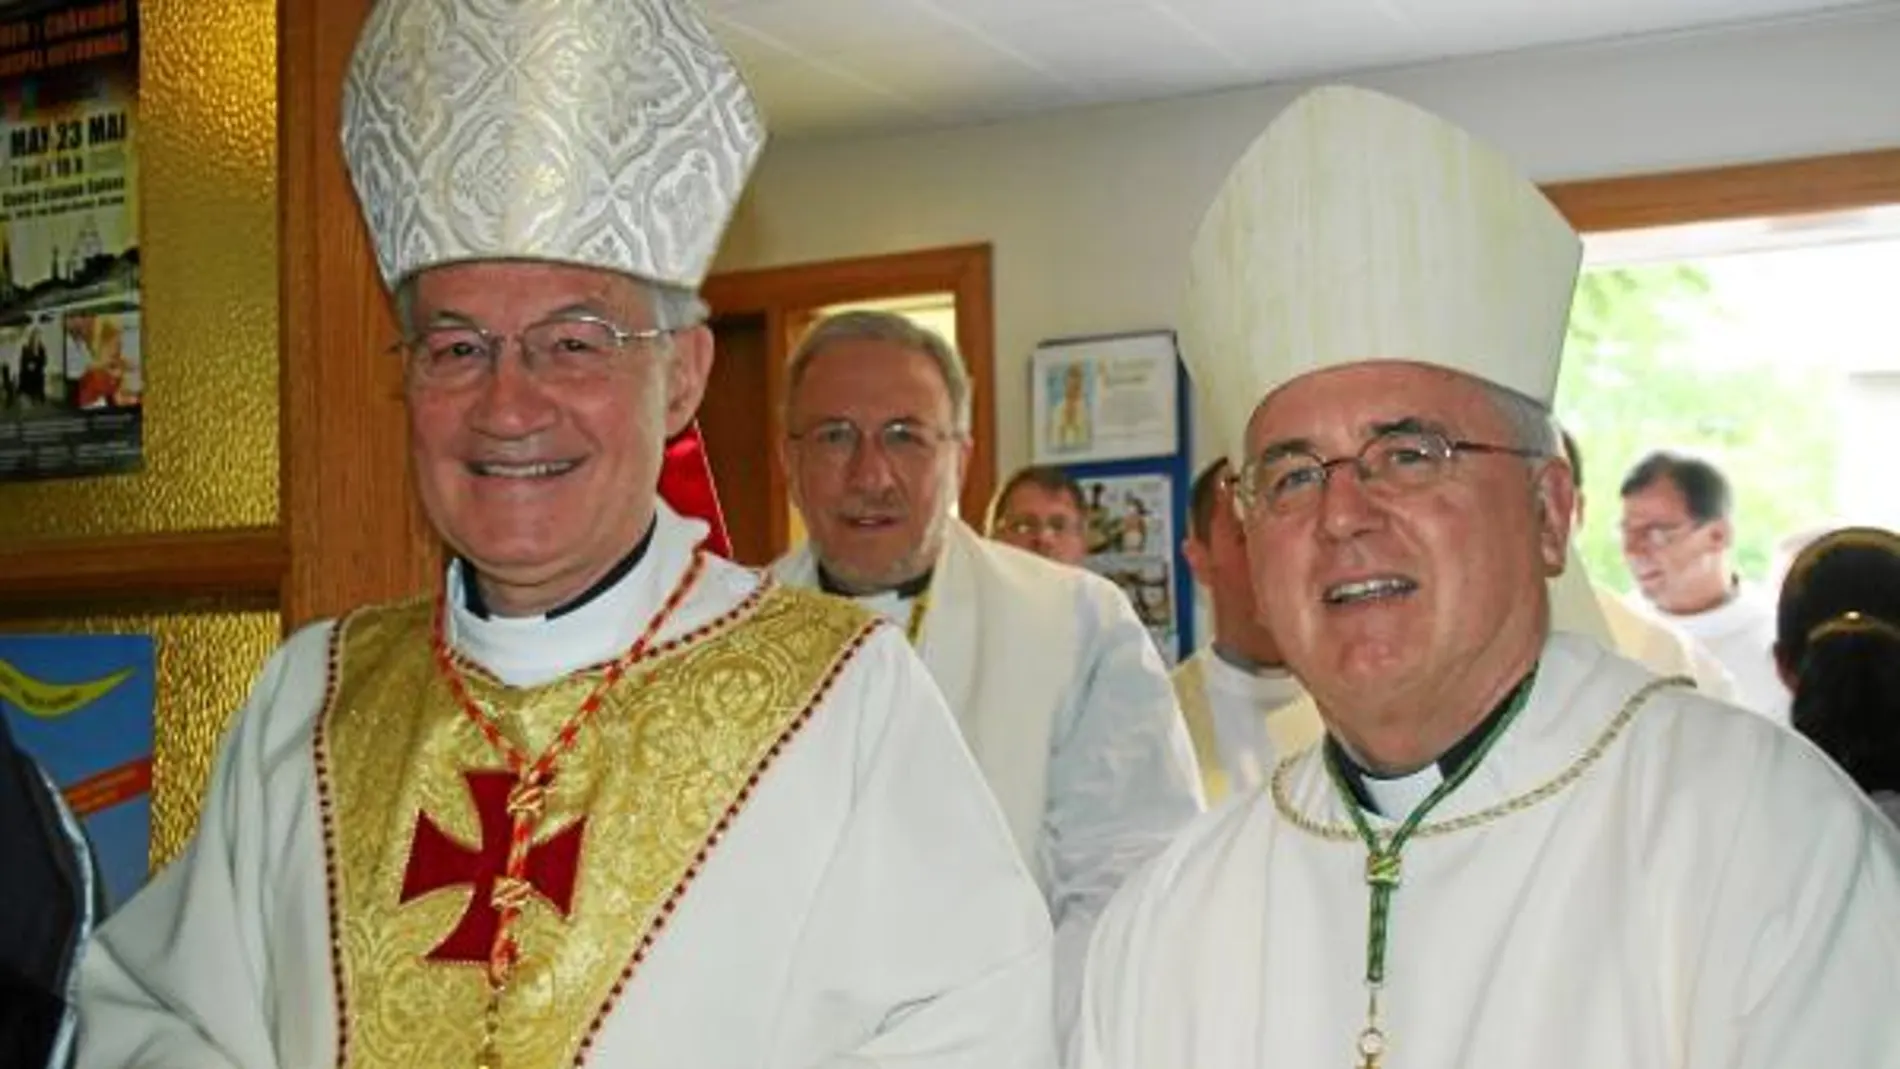 El cardenal Oullet (a la izquierda) y el arzobispo Prendergast (derecha), unidos frente a la clase política canadiense